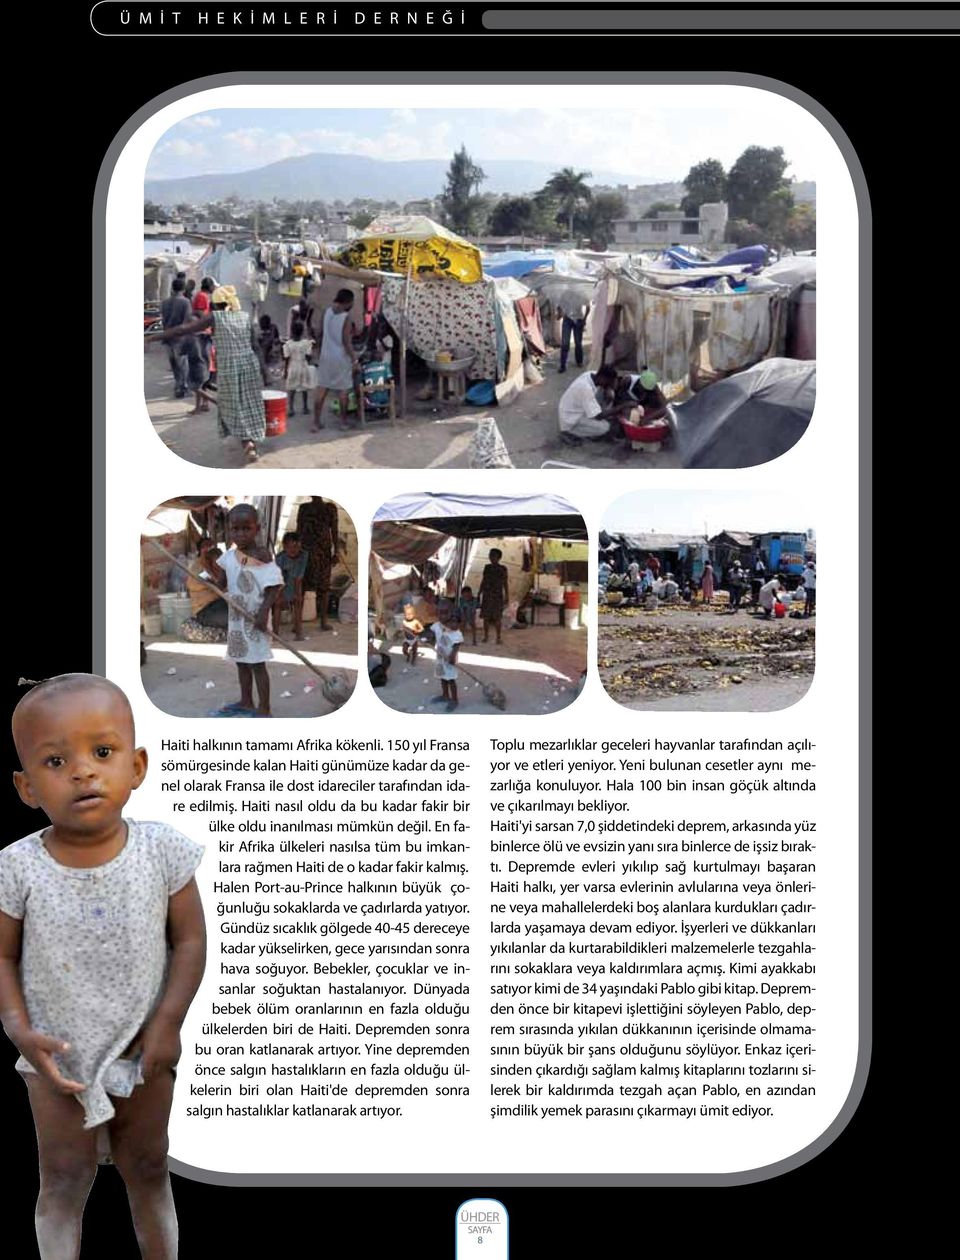 En fakir Afrika ülkeleri nasılsa tüm bu imkanlara rağmen Haiti de o kadar fakir kalmış. Halen Port-au-Prince halkının büyük çoğunluğu sokaklarda ve çadırlarda yatıyor.